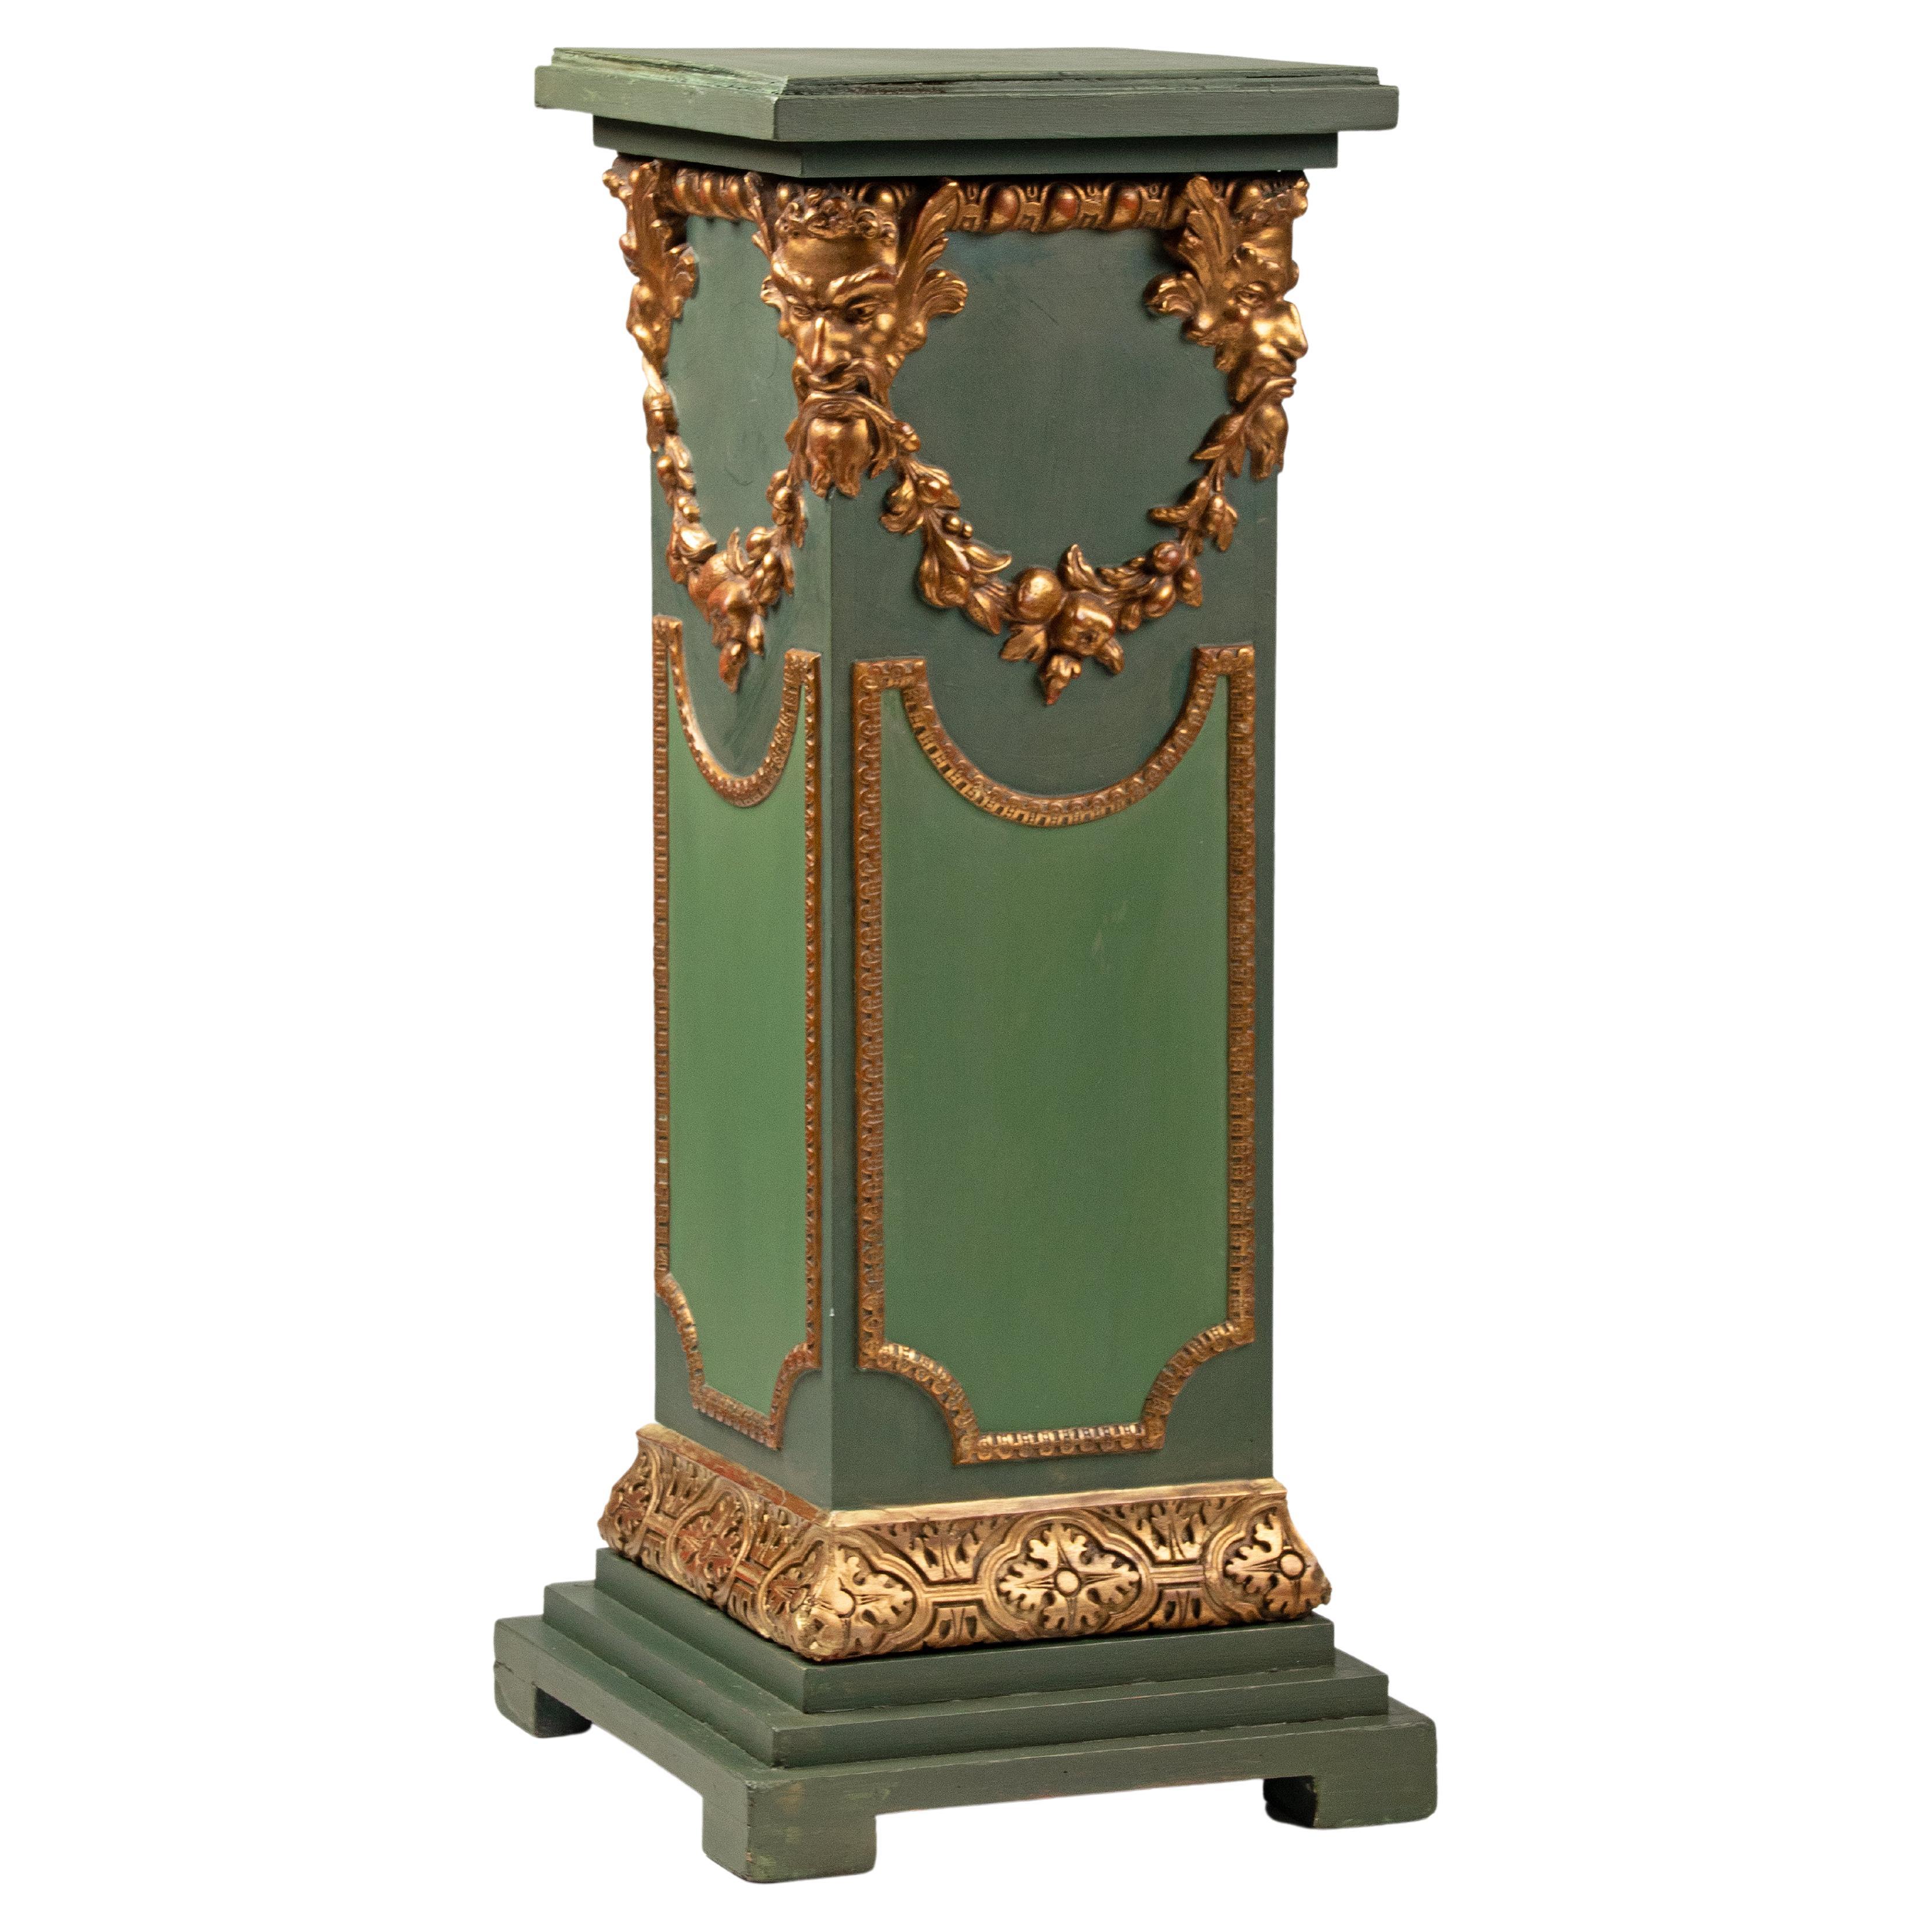 Fin du 19e siècle, piédestal / porte-vase de style Renaissance en vente